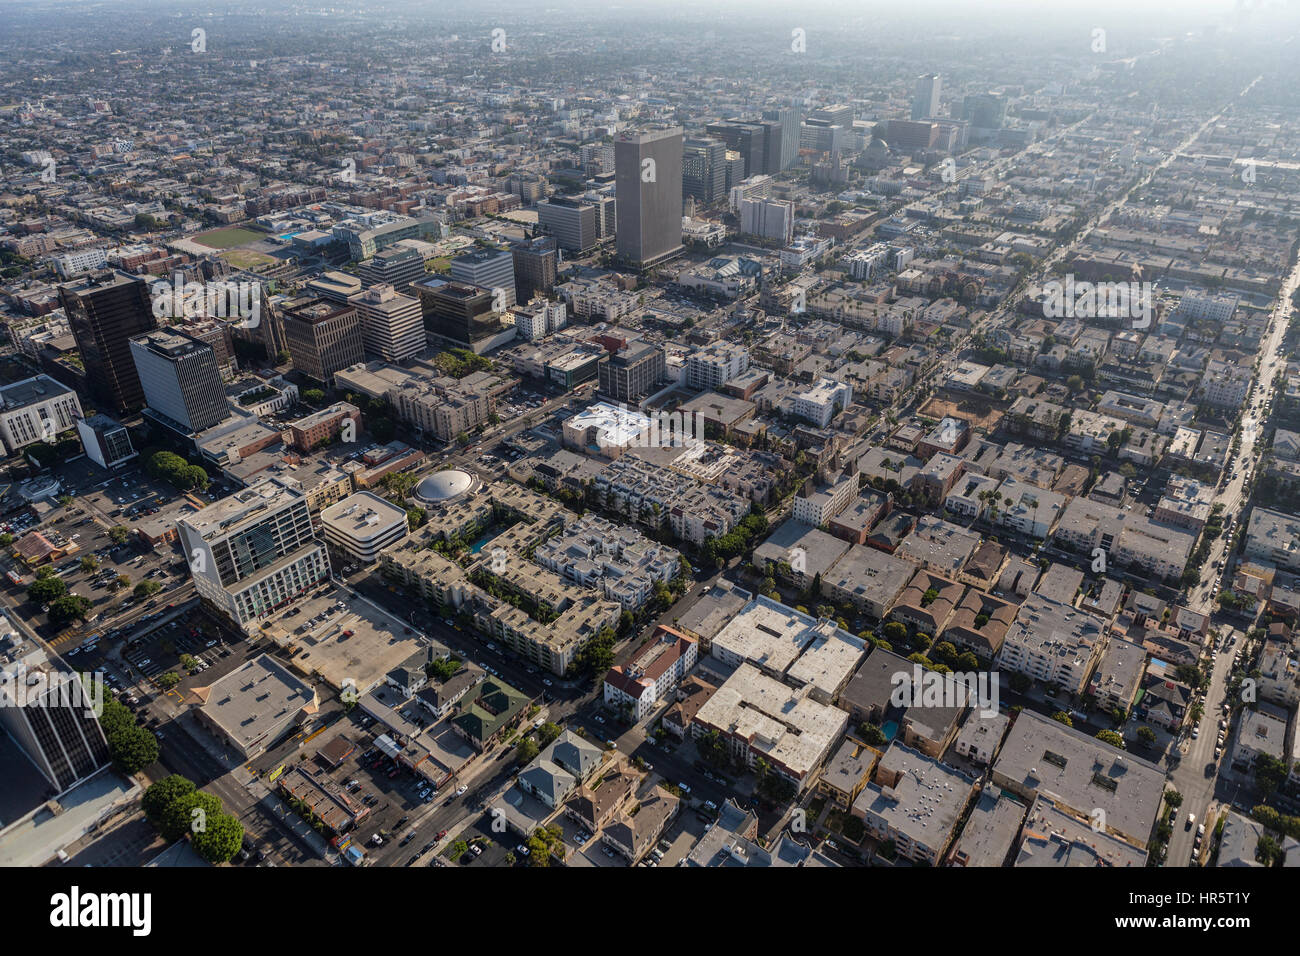 Los Angeles, Kalifornien, USA - 6. August 2016: Luftaufnahme des Sommersmogs am Nachmittag über die Mid-Wilshire und Korea Town Nachbarschaften. Stockfoto